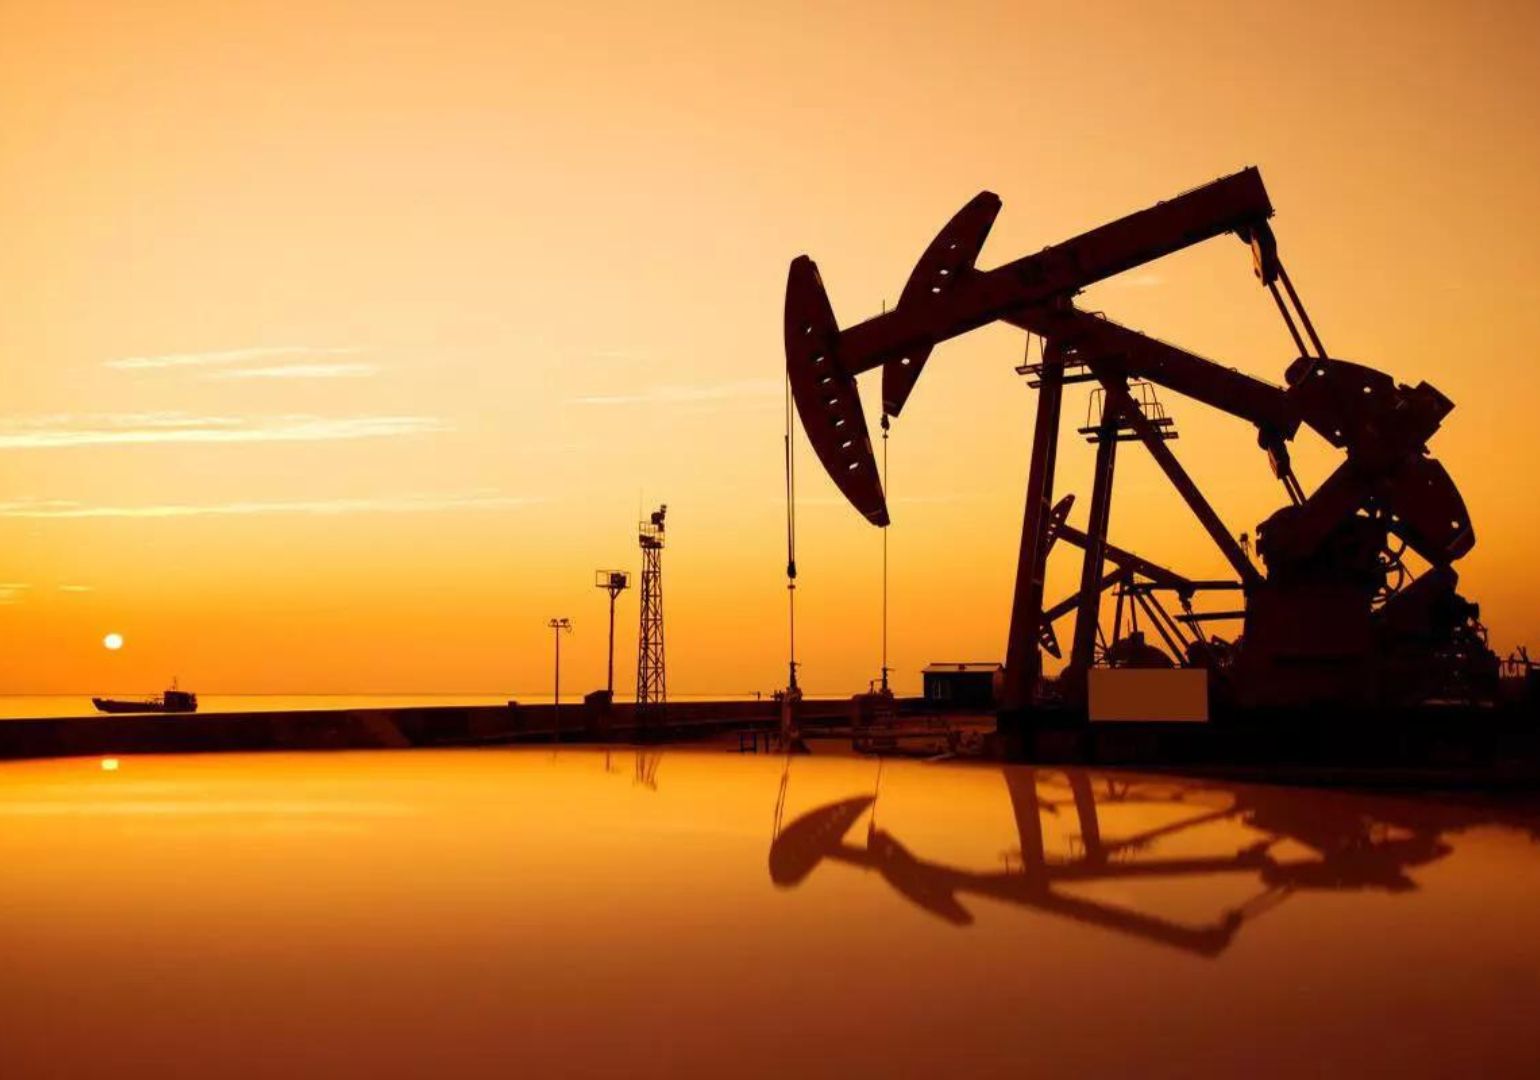 რამდენად დიდია ნედლი ნავთობის გლობალური ბაზარი?